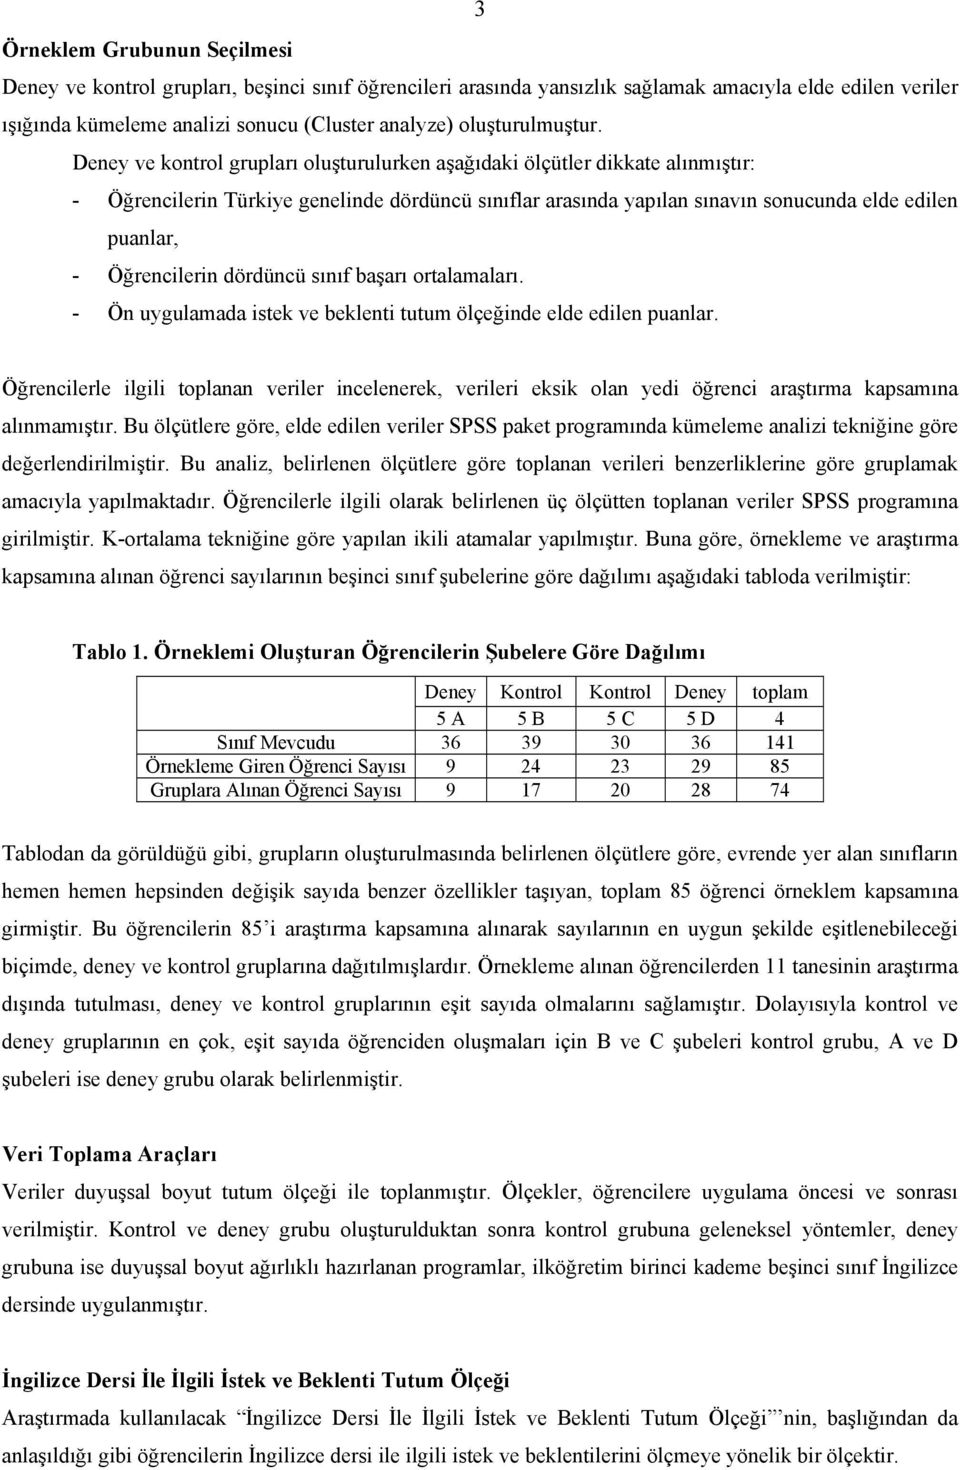 Deney ve kontrol grupları oluşturulurken aşağıdaki ölçütler dikkate alınmıştır: - Öğrencilerin Türkiye genelinde dördüncü sınıflar arasında yapılan sınavın sonucunda elde edilen puanlar, -